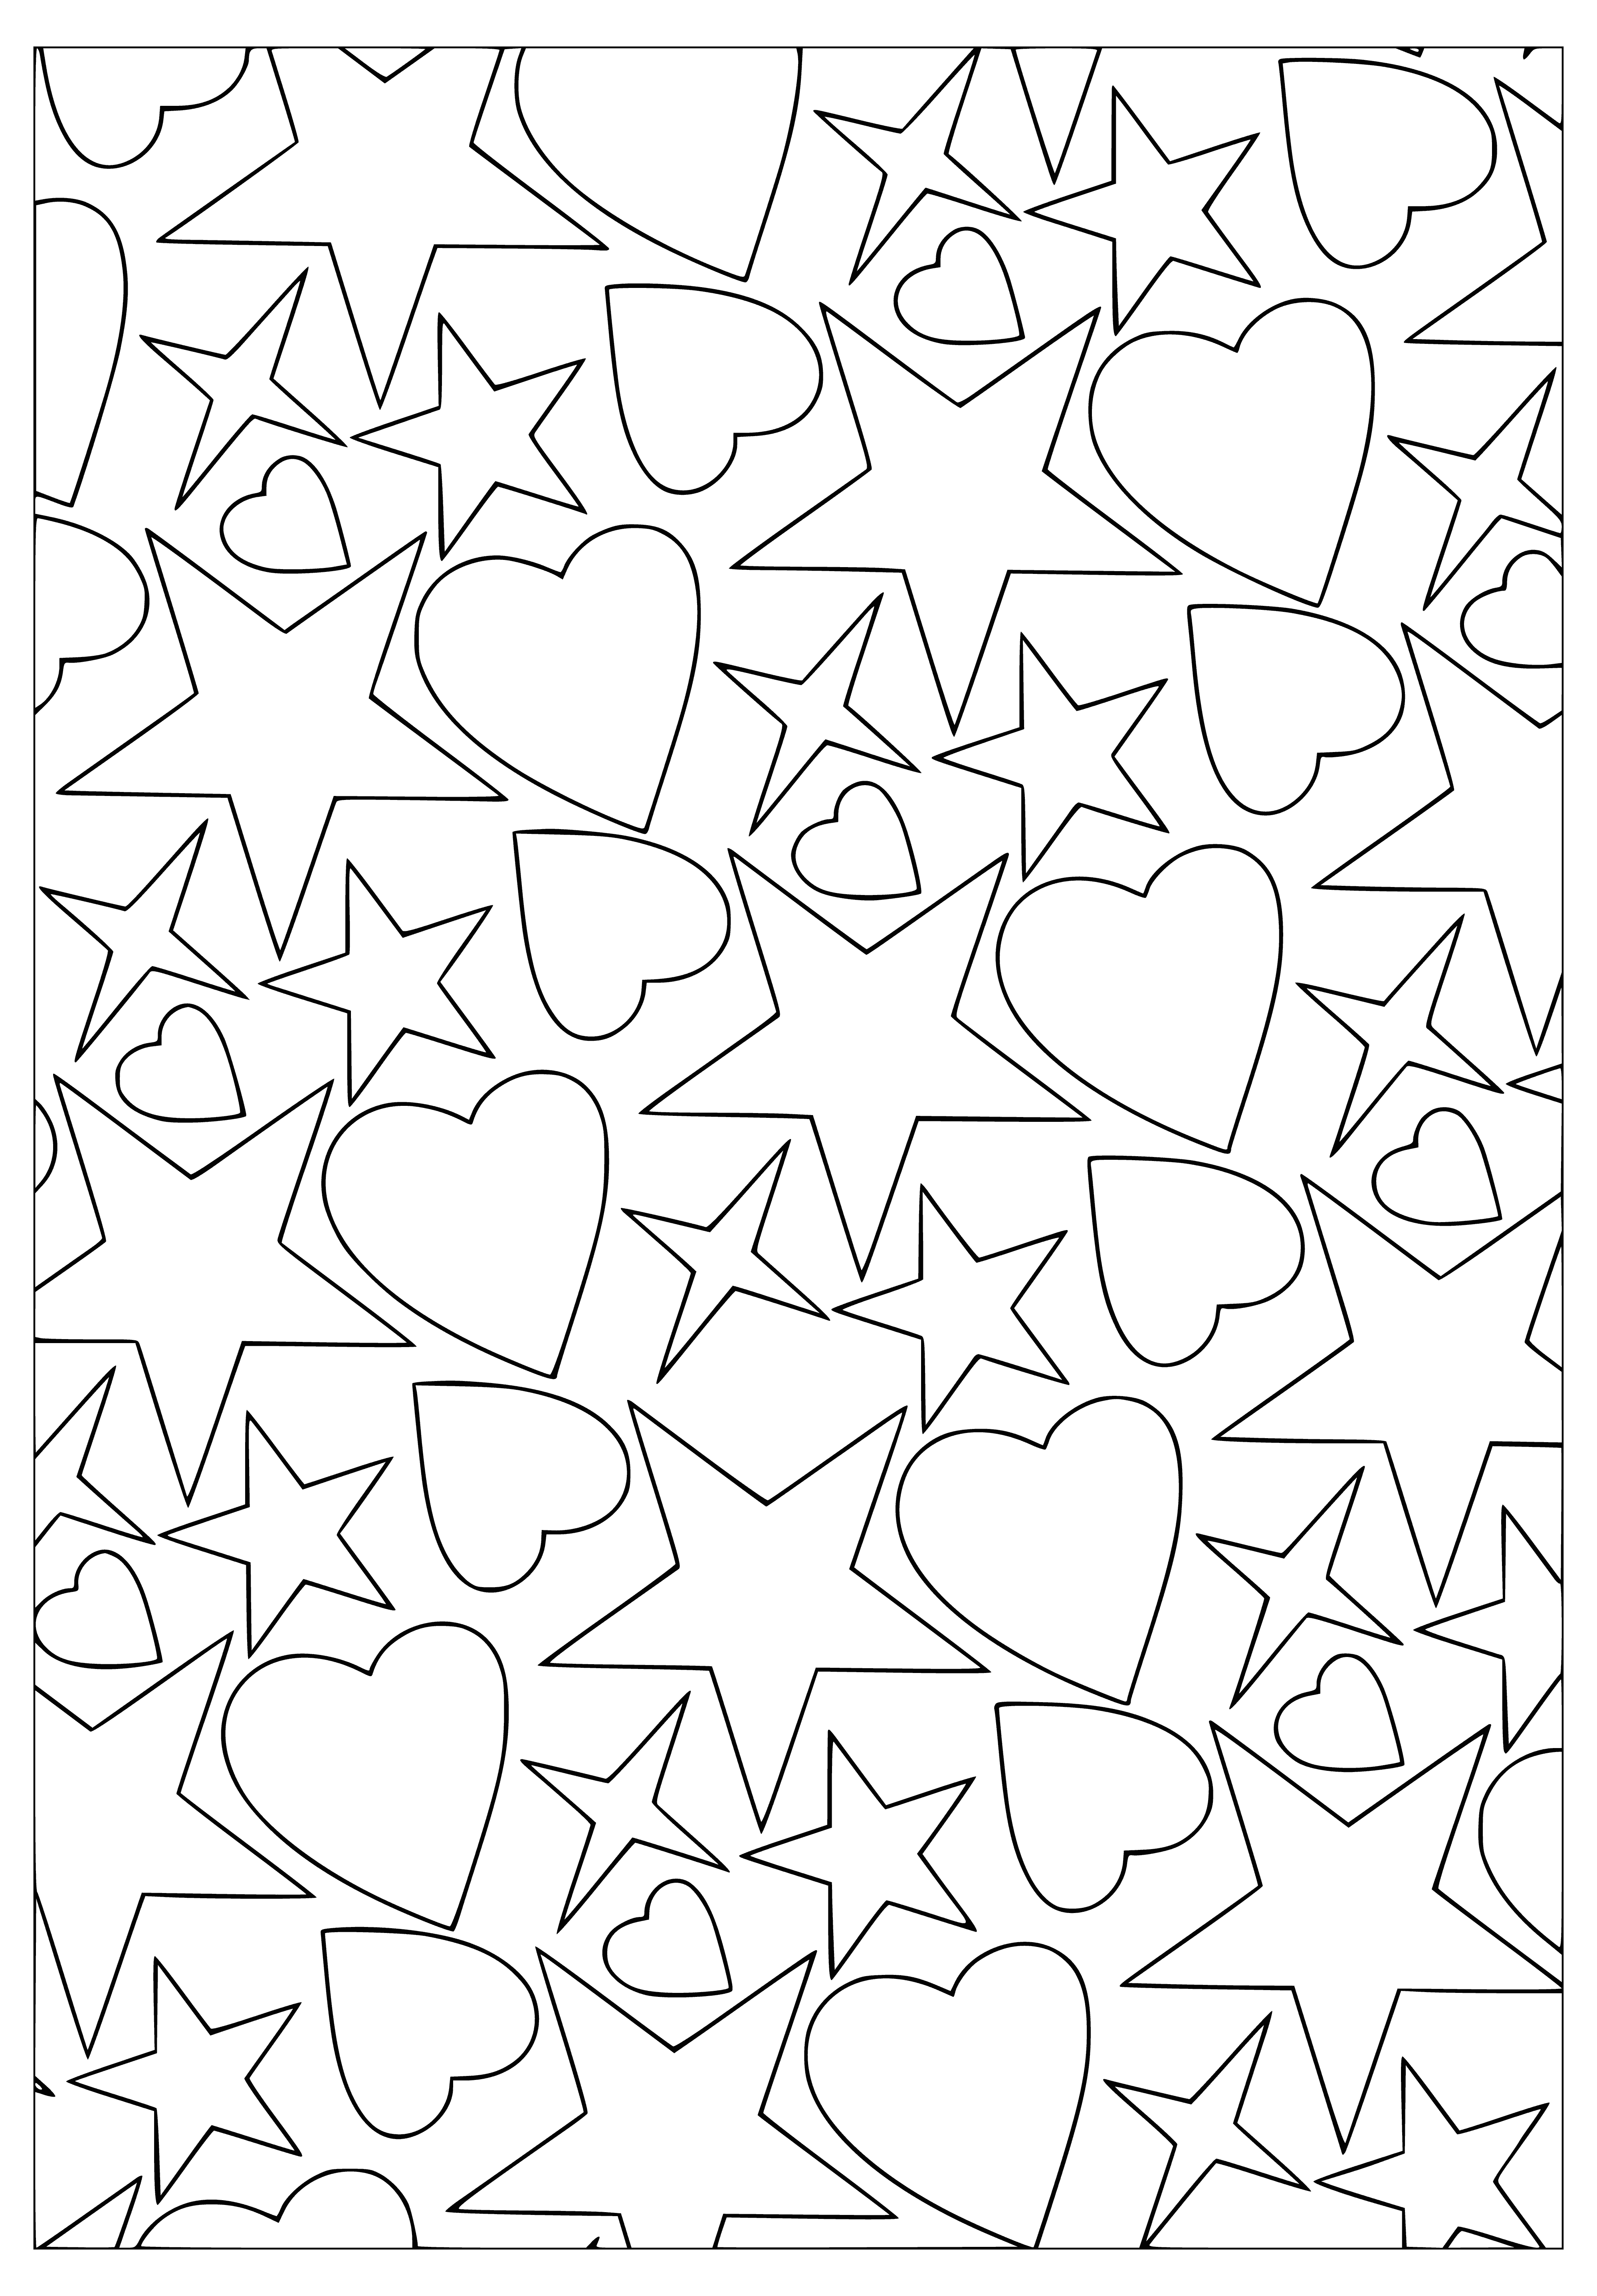 Kalpler ve yıldızlar boyama sayfası